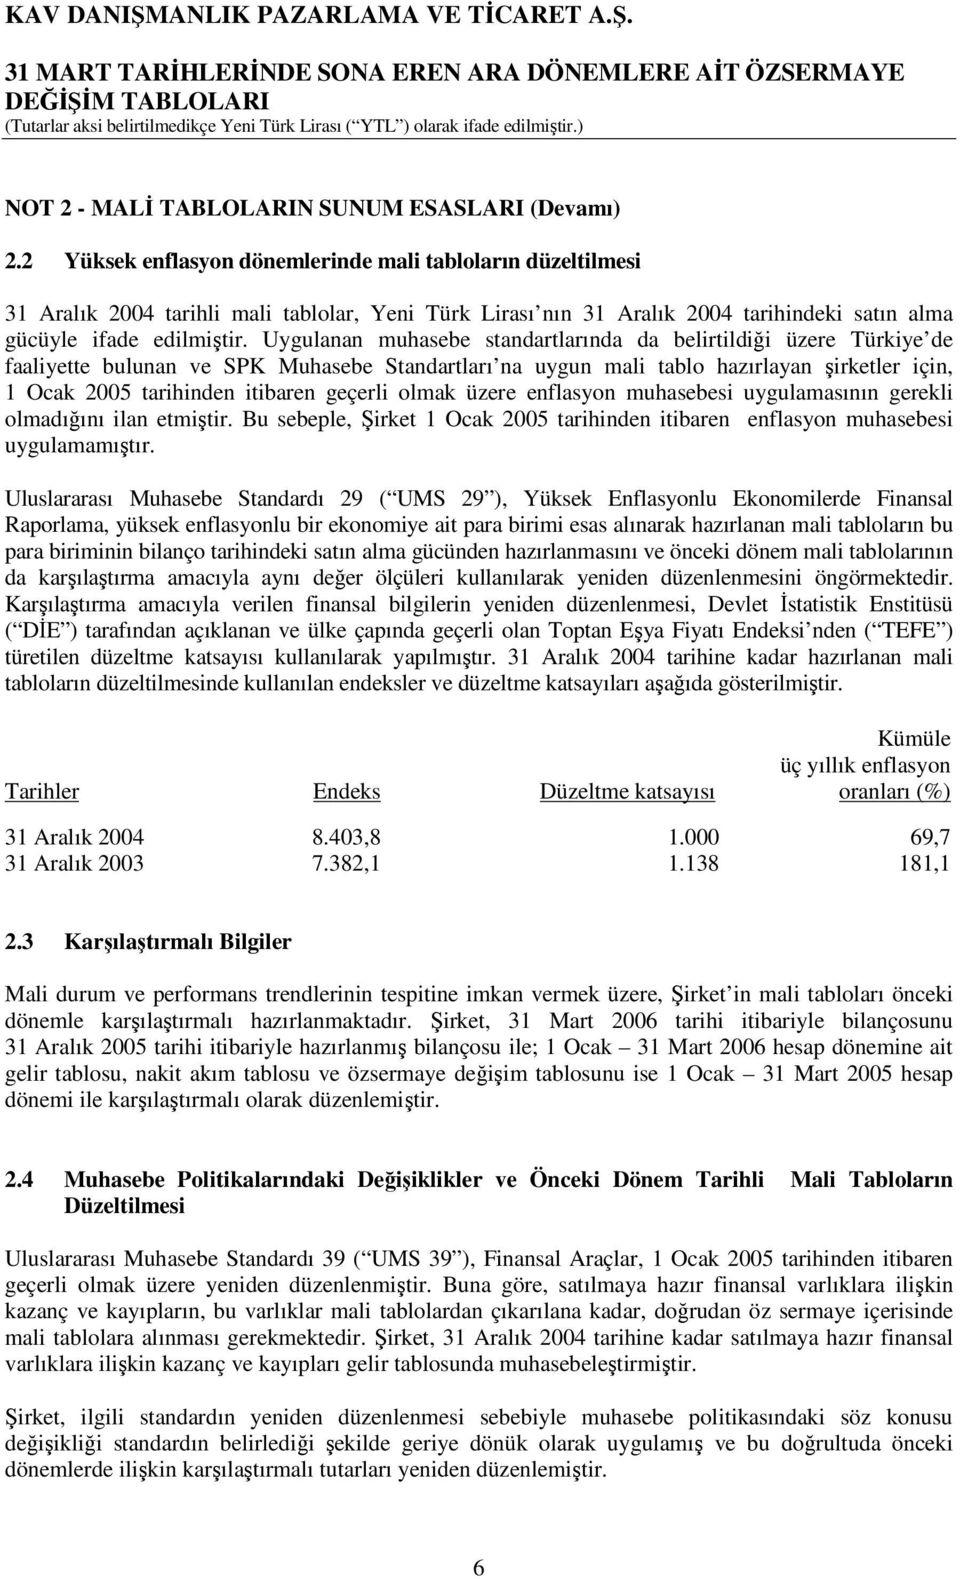 Uygulanan muhasebe standartlarında da belirtildiği üzere Türkiye de faaliyette bulunan ve SPK Muhasebe Standartları na uygun mali tablo hazırlayan şirketler için, 1 Ocak 2005 tarihinden itibaren